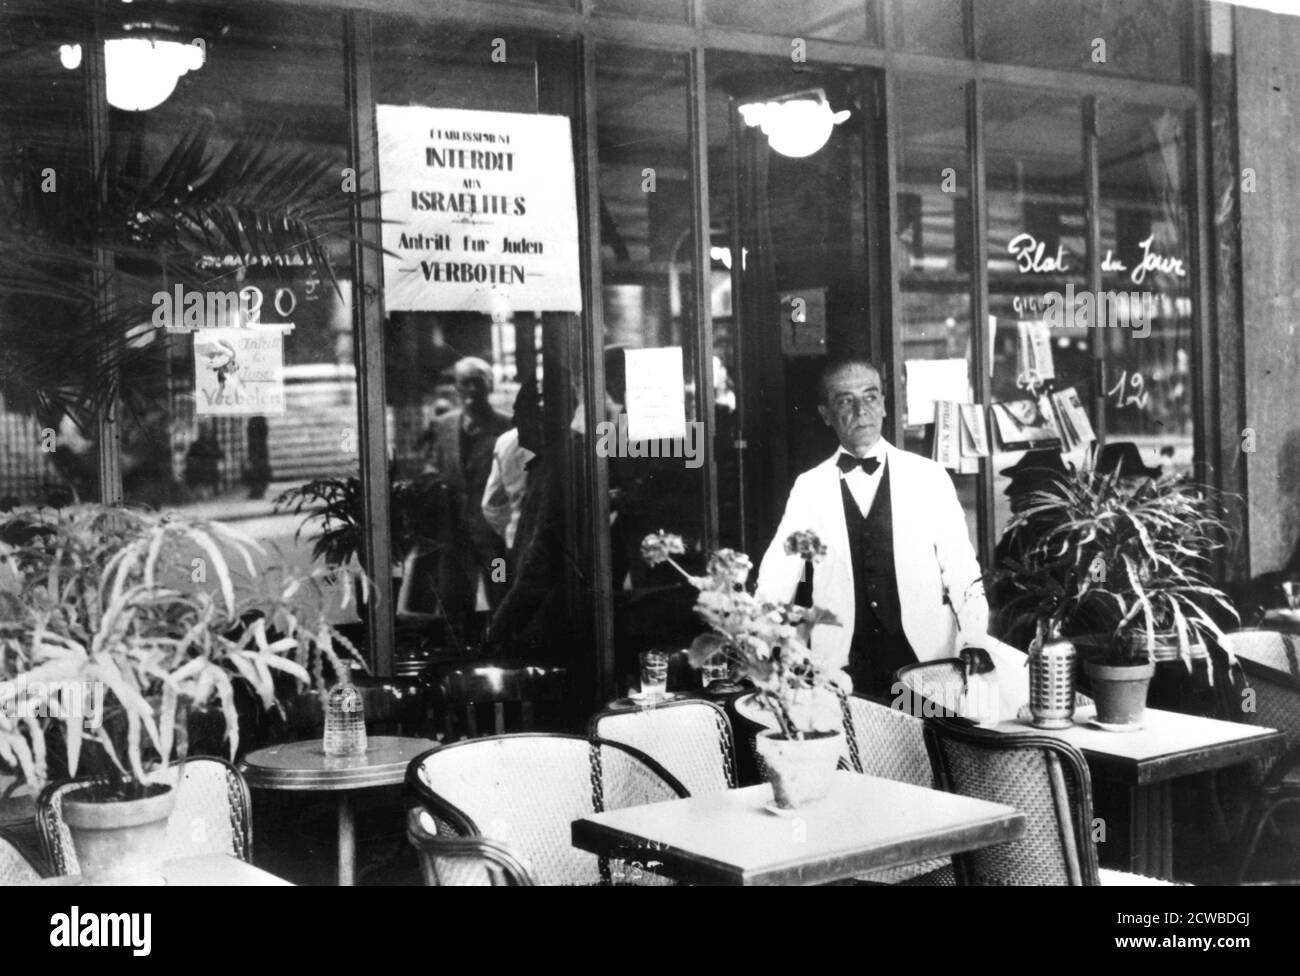 Hinweis in einem Restaurantfenster, das Juden die Einreise verbietet, deutsch besetzte Paris, Juli 1940. Das Leben für französische Juden war unter der Nazi-Besatzung unterdrückend. Kollaborateure im besetzten Teil des Landes und in dem vom Vichy-Regime kontrollierten Gebiet arbeiteten enthusiastisch bei der Verfolgung zusammen. Der Fotograf ist unbekannt. Stockfoto